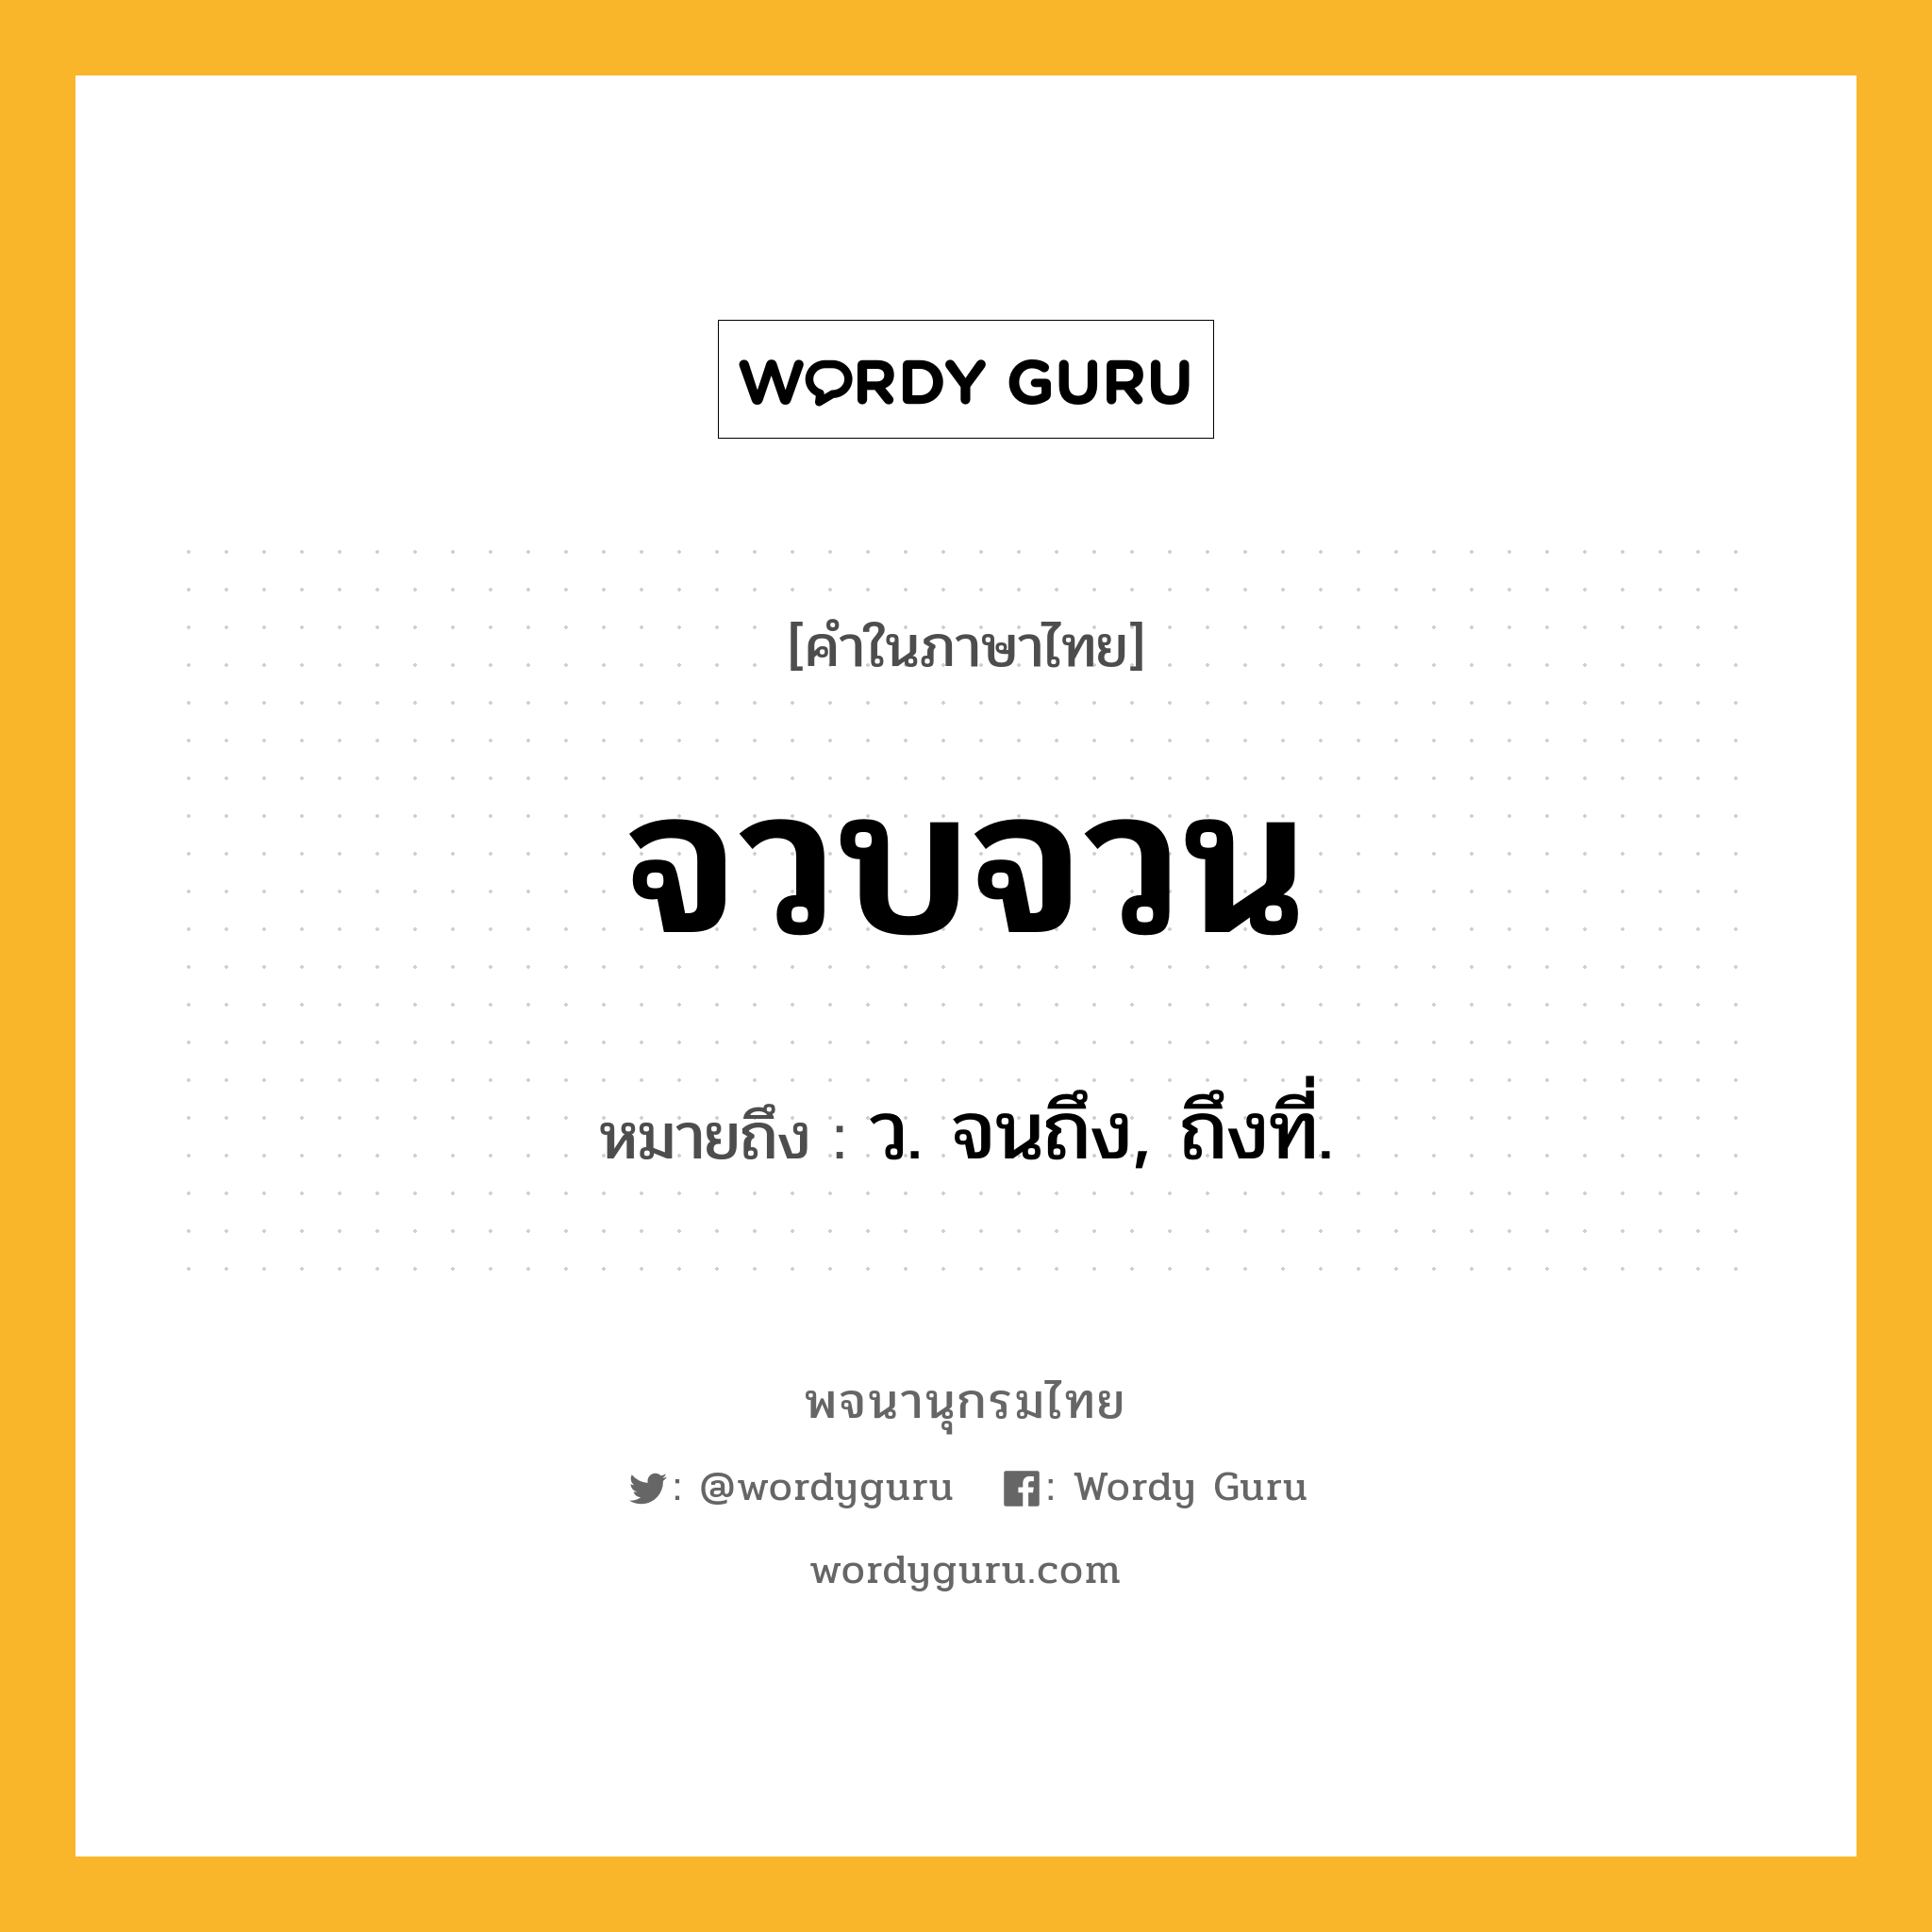 จวบจวน ความหมาย หมายถึงอะไร?, คำในภาษาไทย จวบจวน หมายถึง ว. จนถึง, ถึงที่.